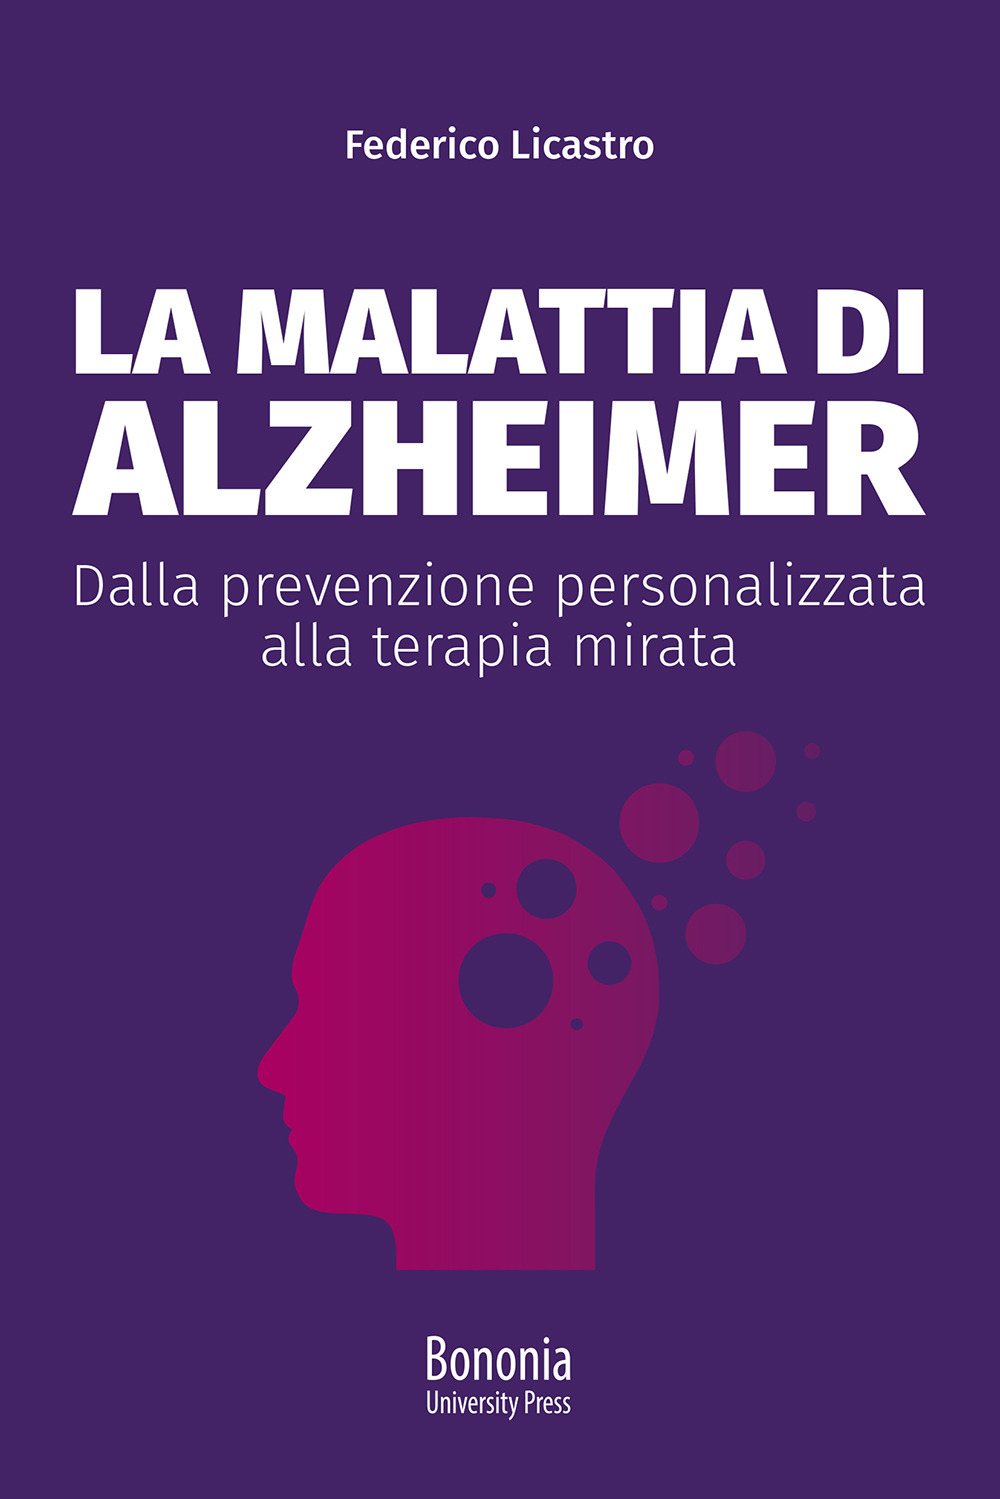 La malattia di Alzheimer. Dalla prevenzione personalizzata alla terapia mirata